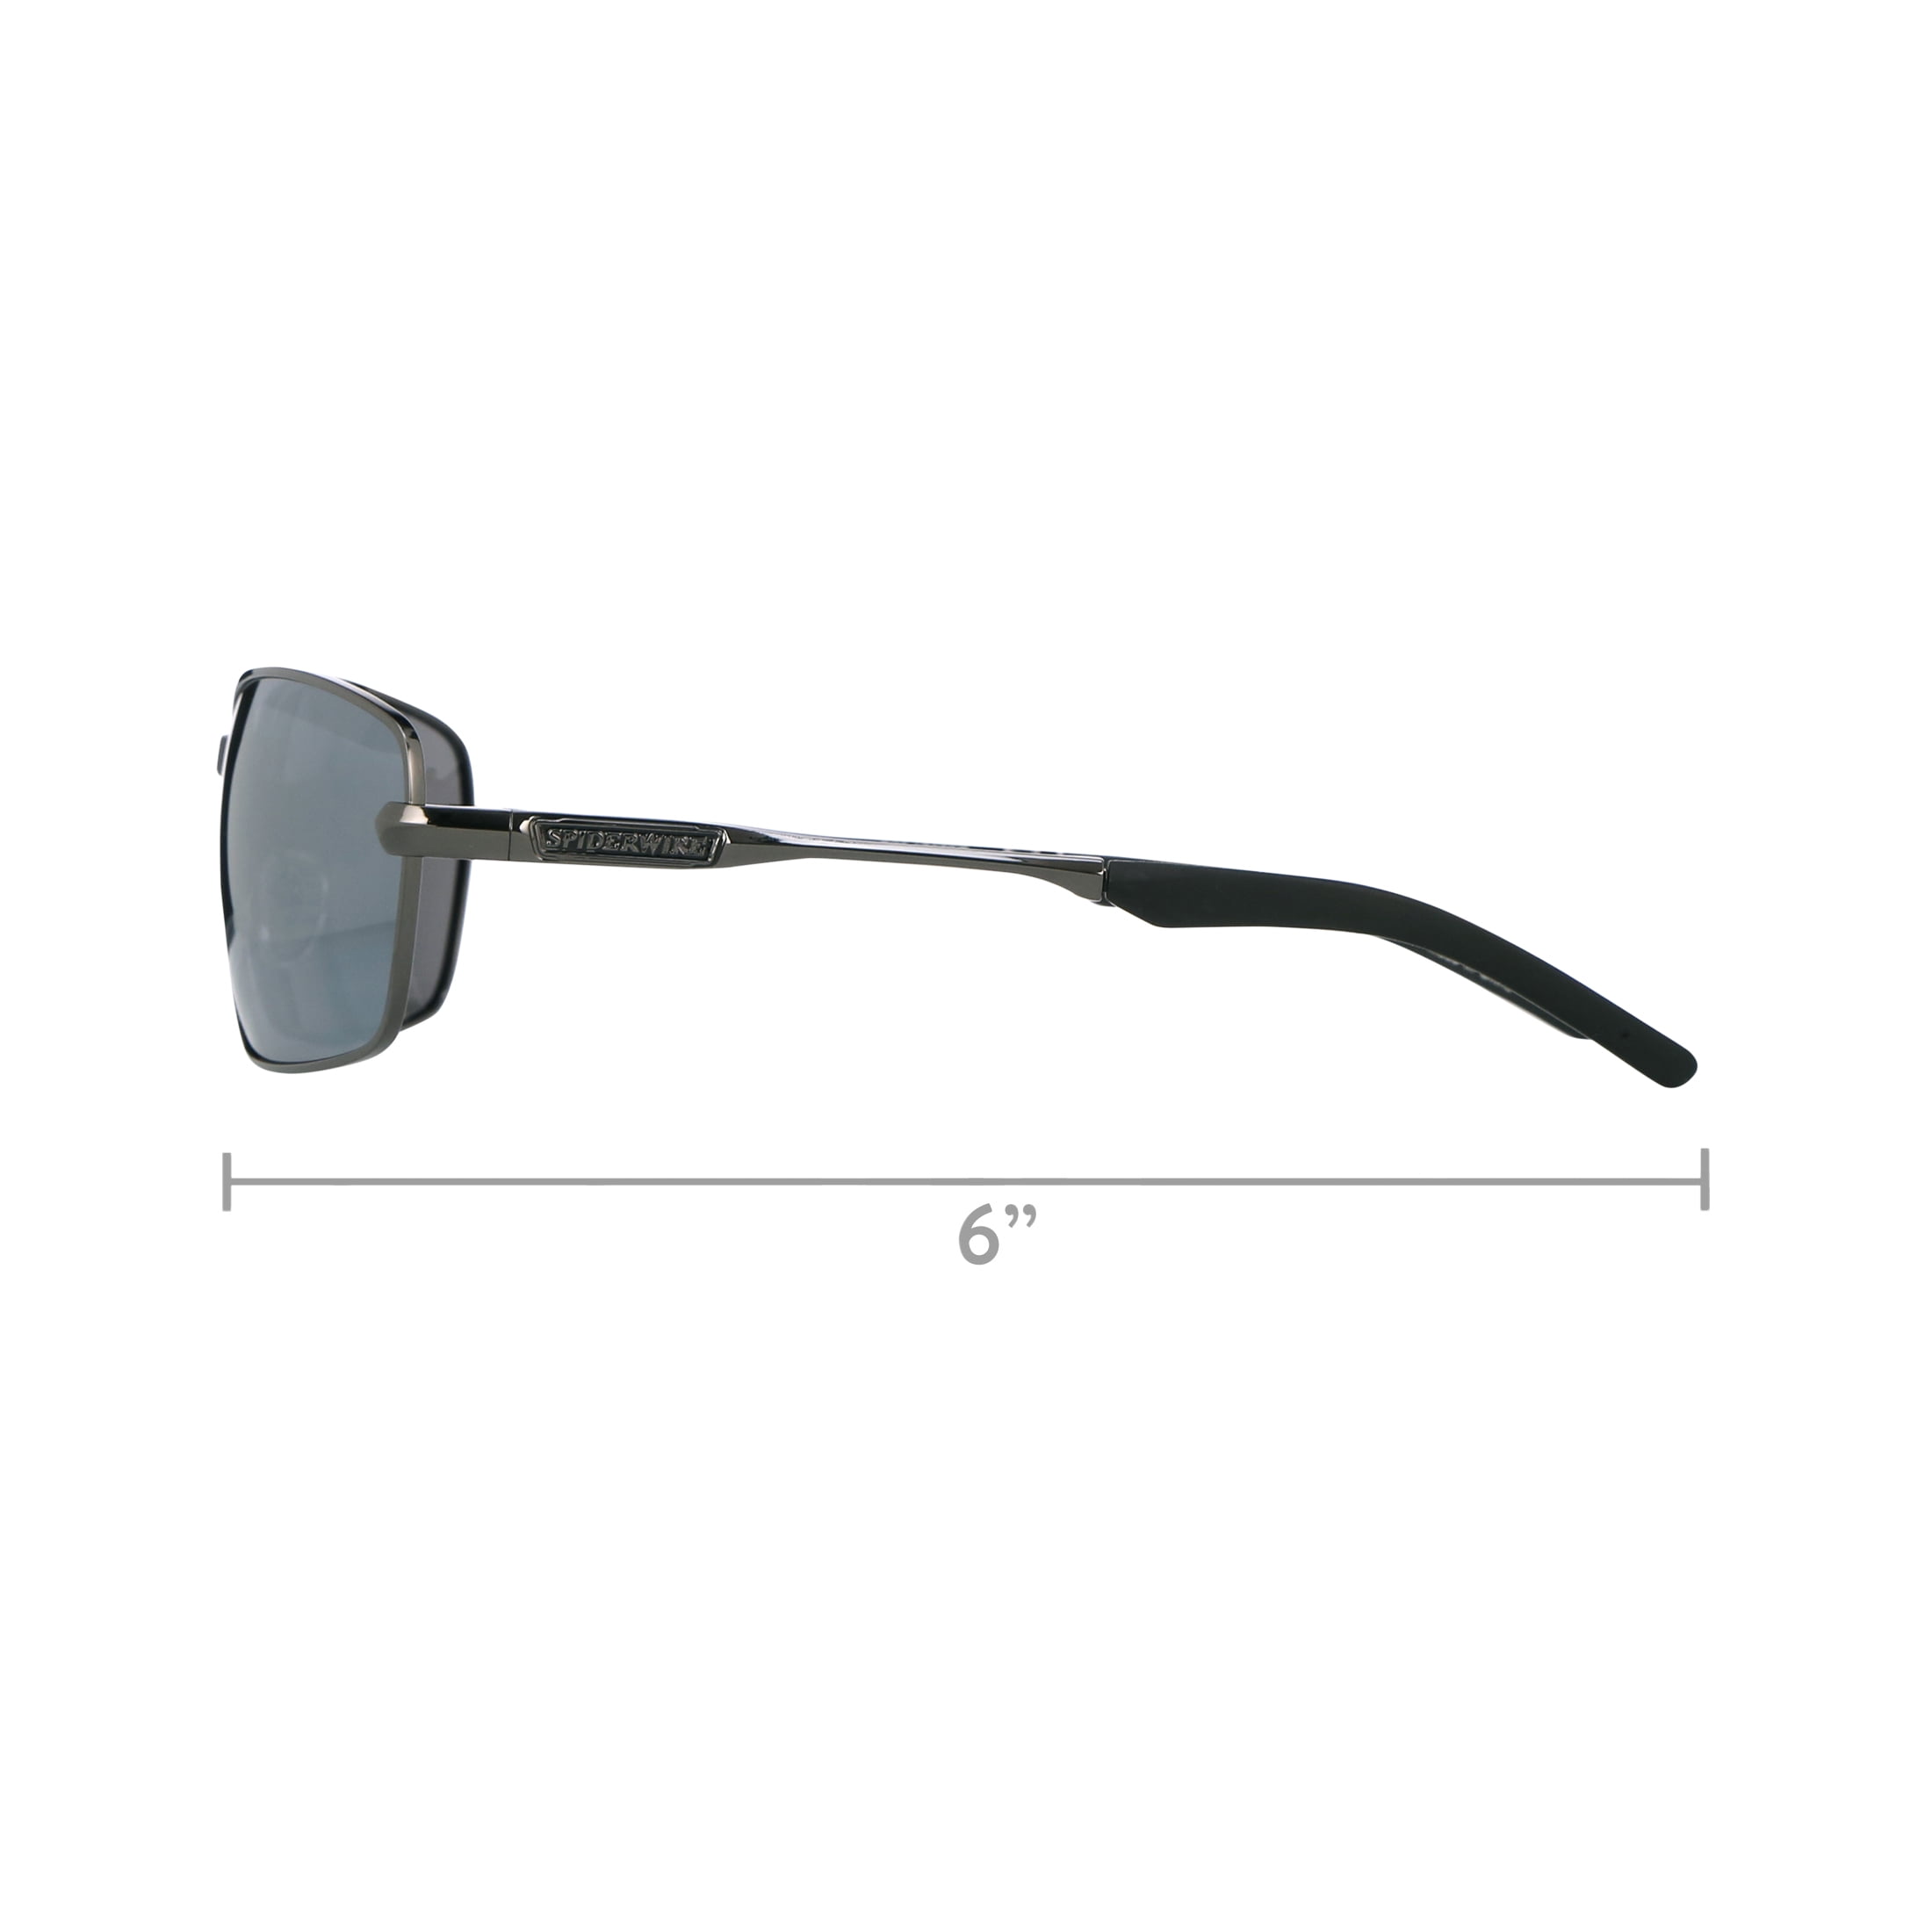 Spiderwire Classic SPW009 Polarized Fishing Sunglasses, Matte Black/Smoke